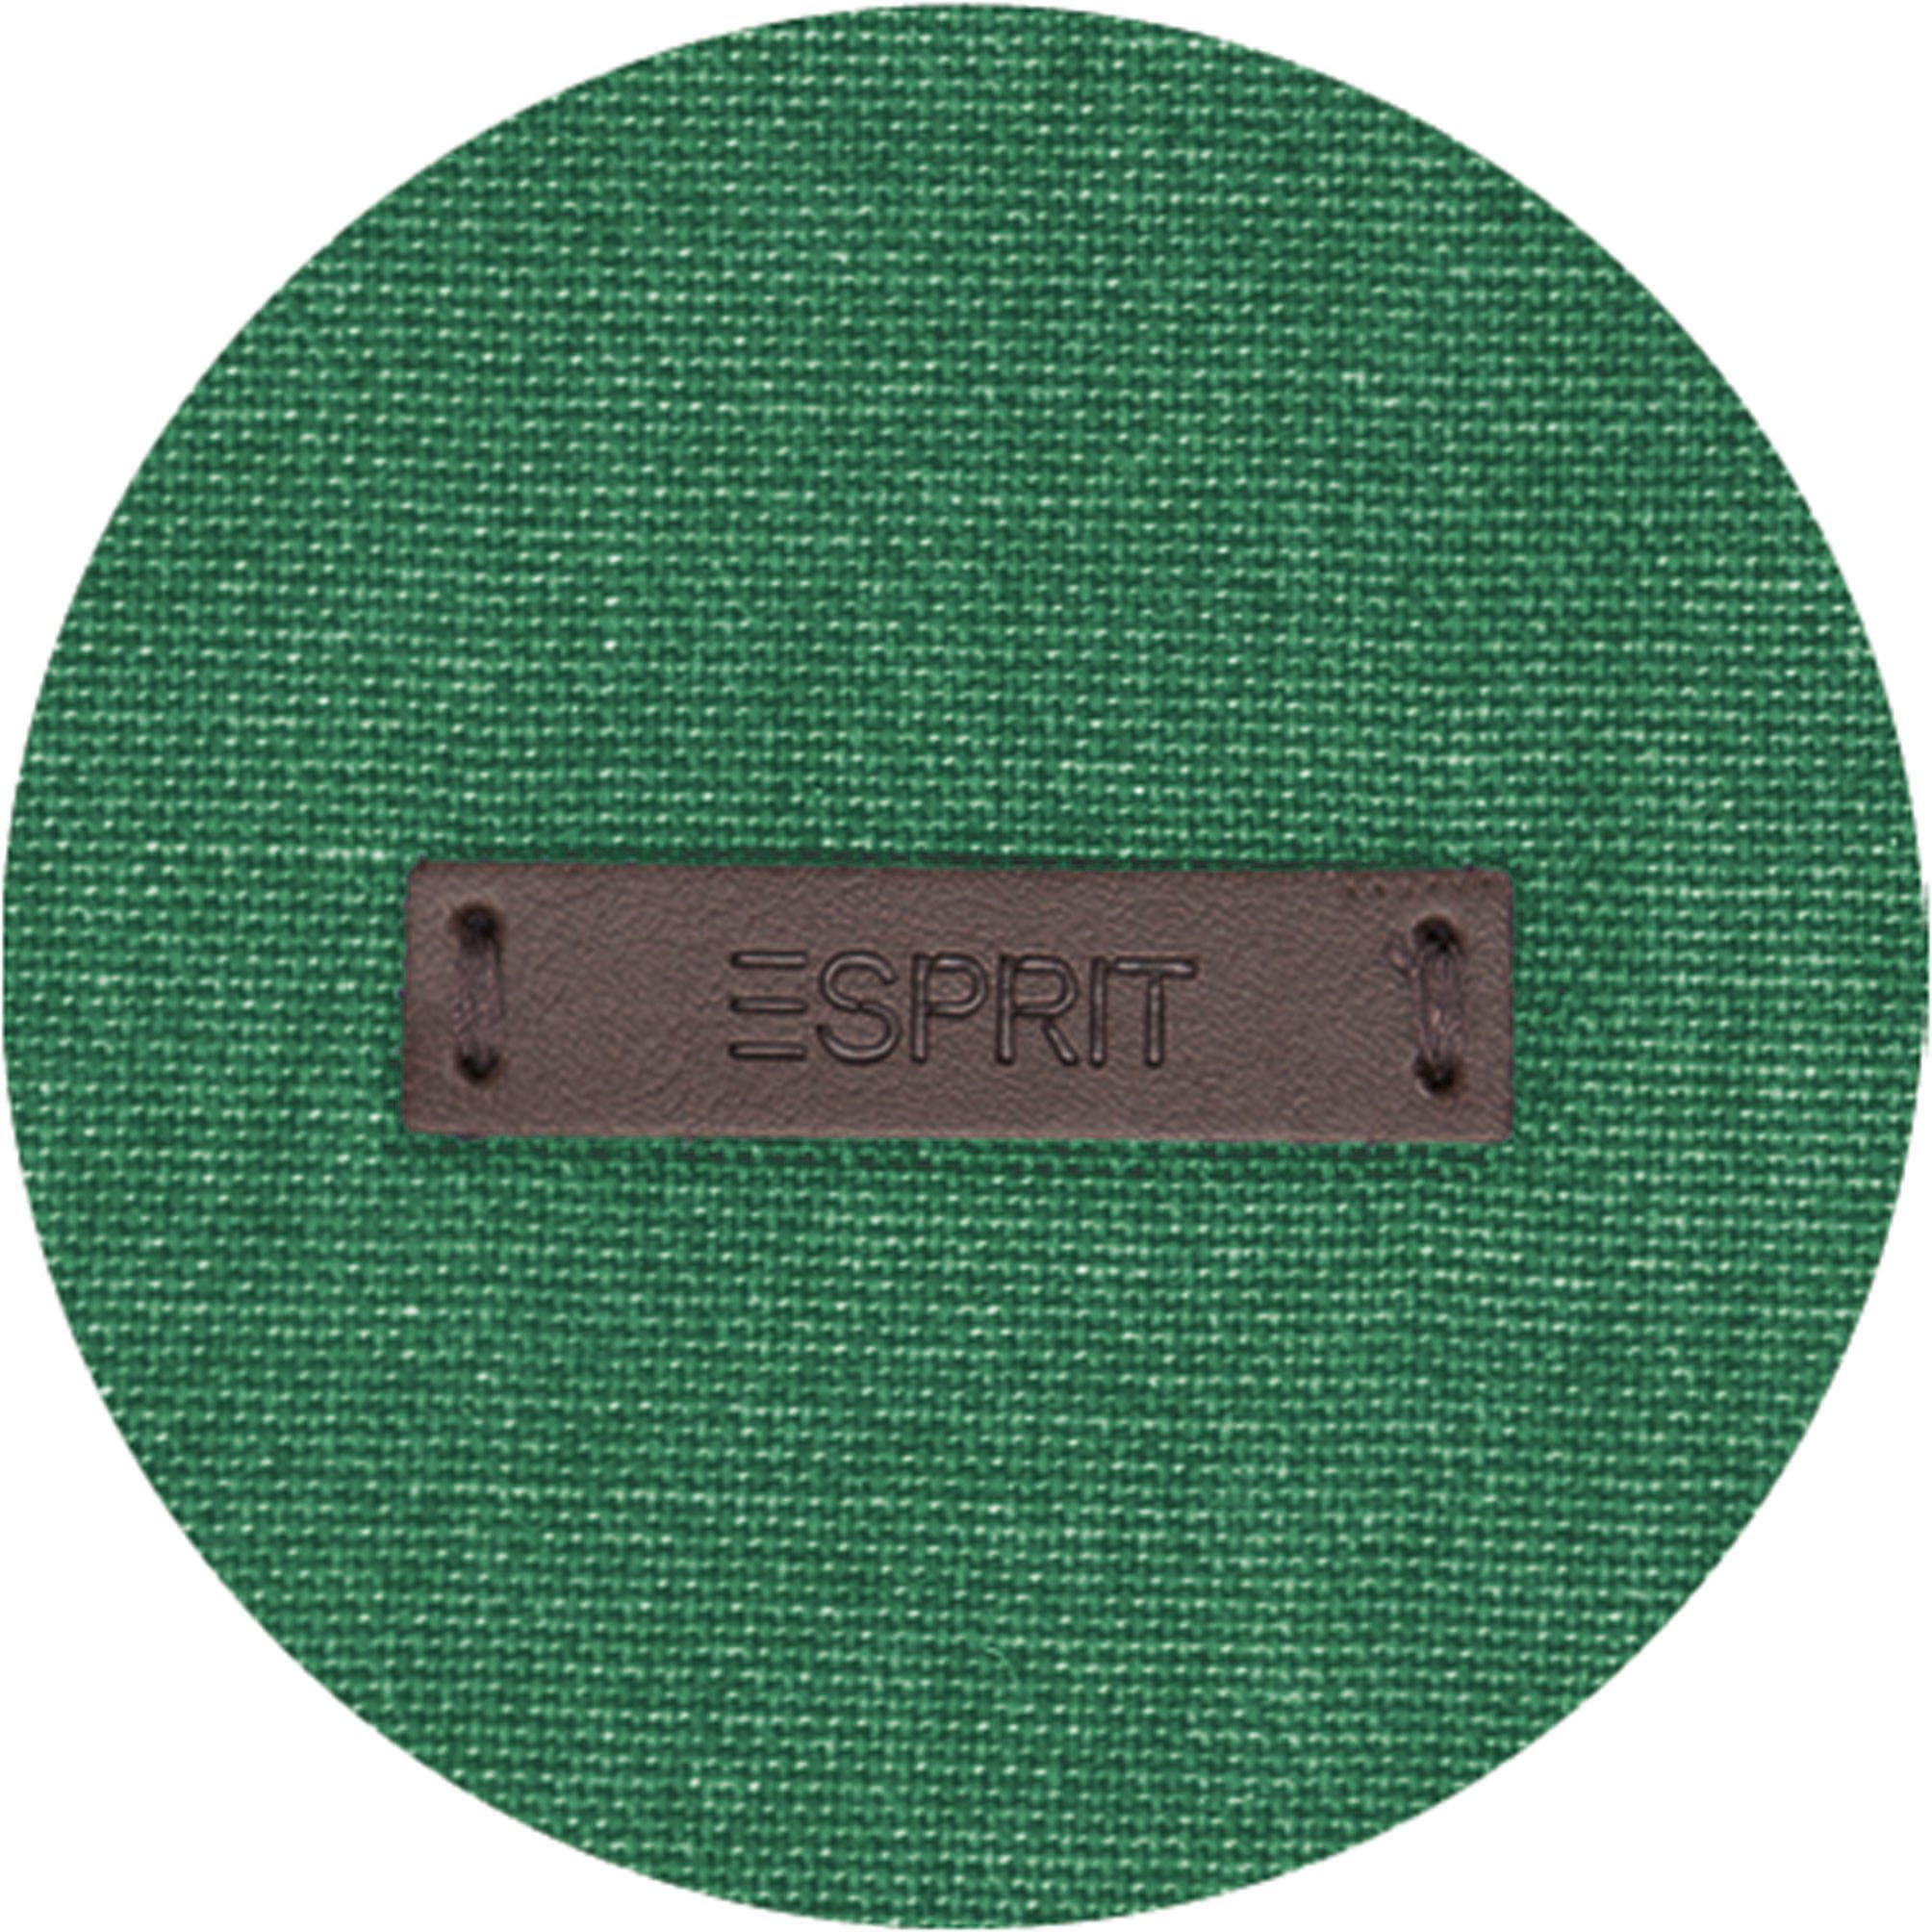 Vorhang Esprit, nachhaltiger (1 Neo, Baumwolle, St), grün/green/dunkelgrün Schlaufen blickdicht, blickdicht verdeckte aus